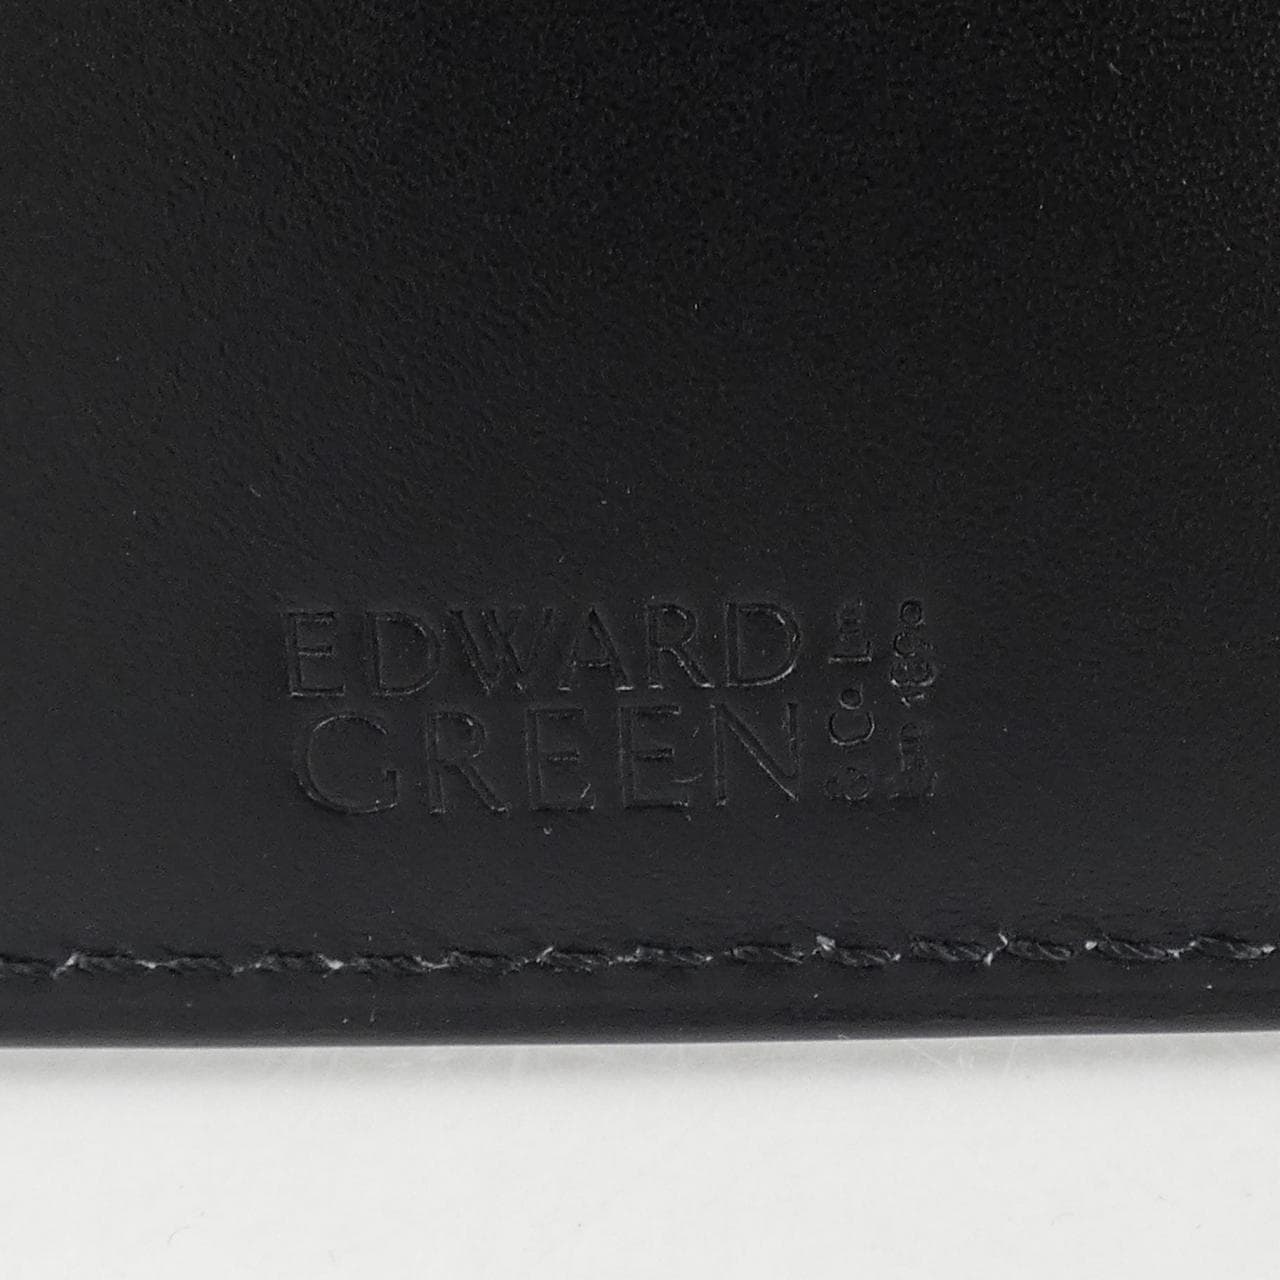 Edward Green EDWARD GREEN CARD CASE